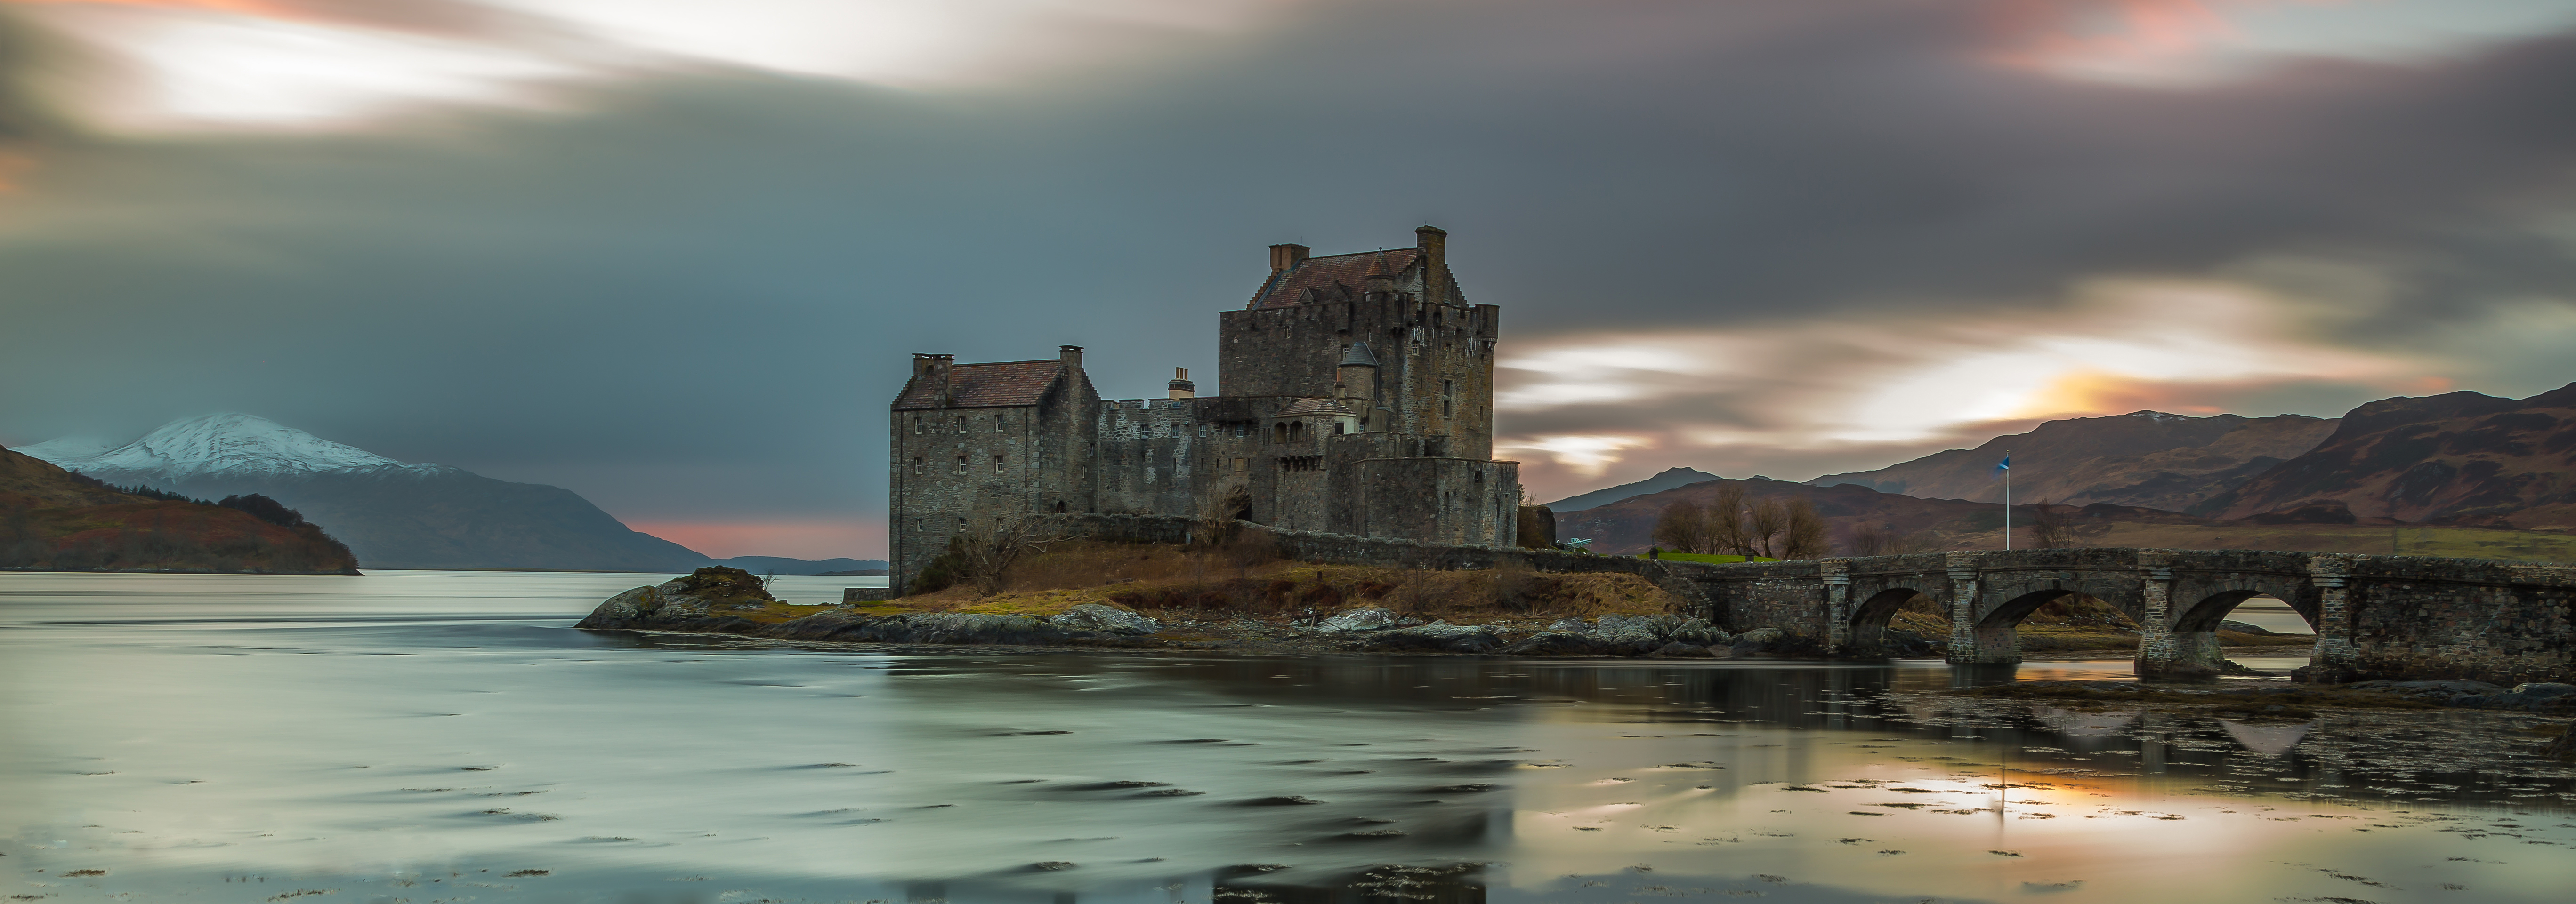 全景图与苏格兰的城堡